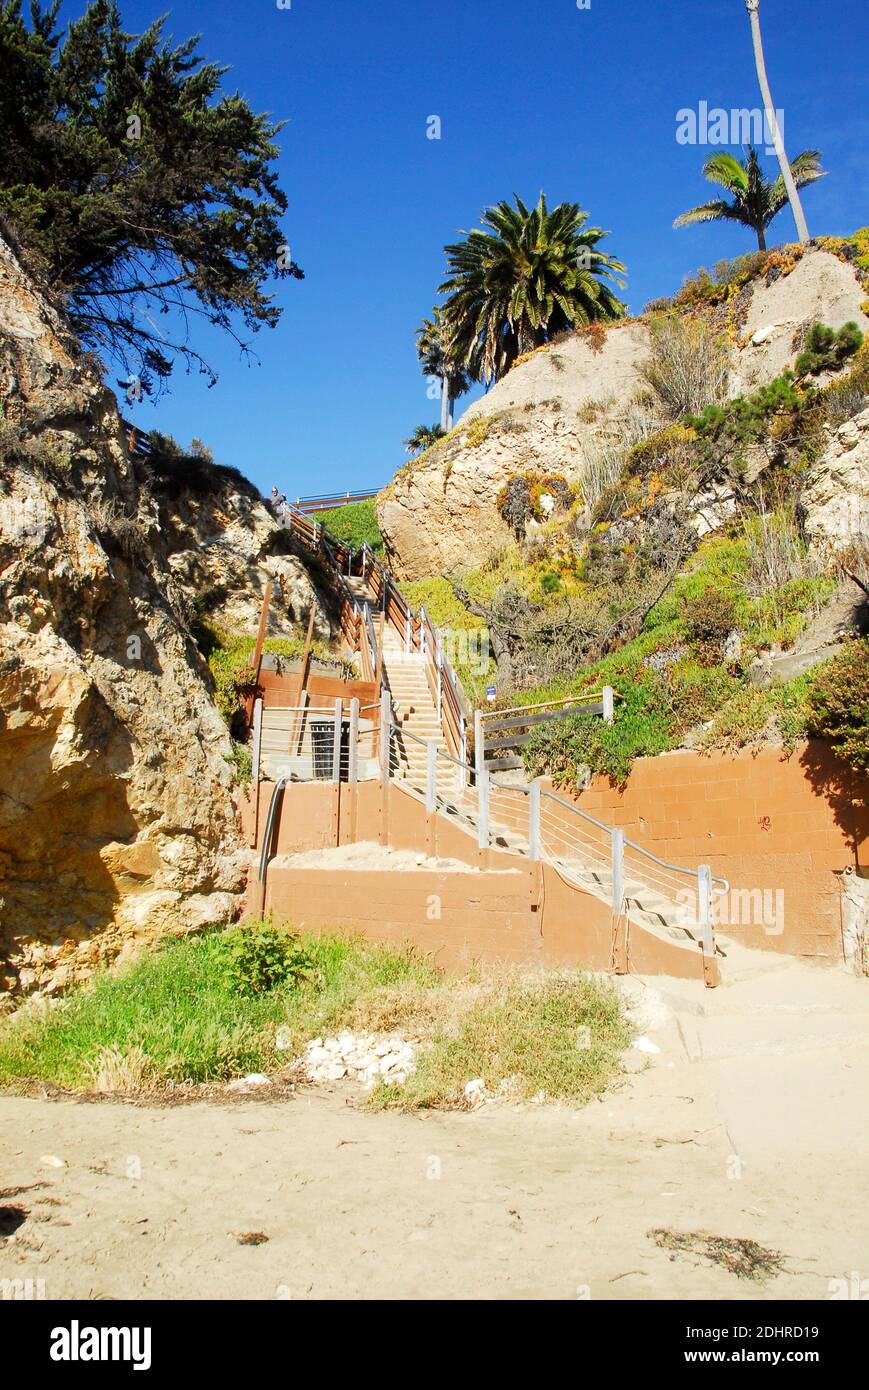 Escaliers descendant vers la plage depuis l'hôtel de Pismo Beach, célèbre pour ses palourdes de Pismo, ses plages et ses dunes de sable. Banque D'Images